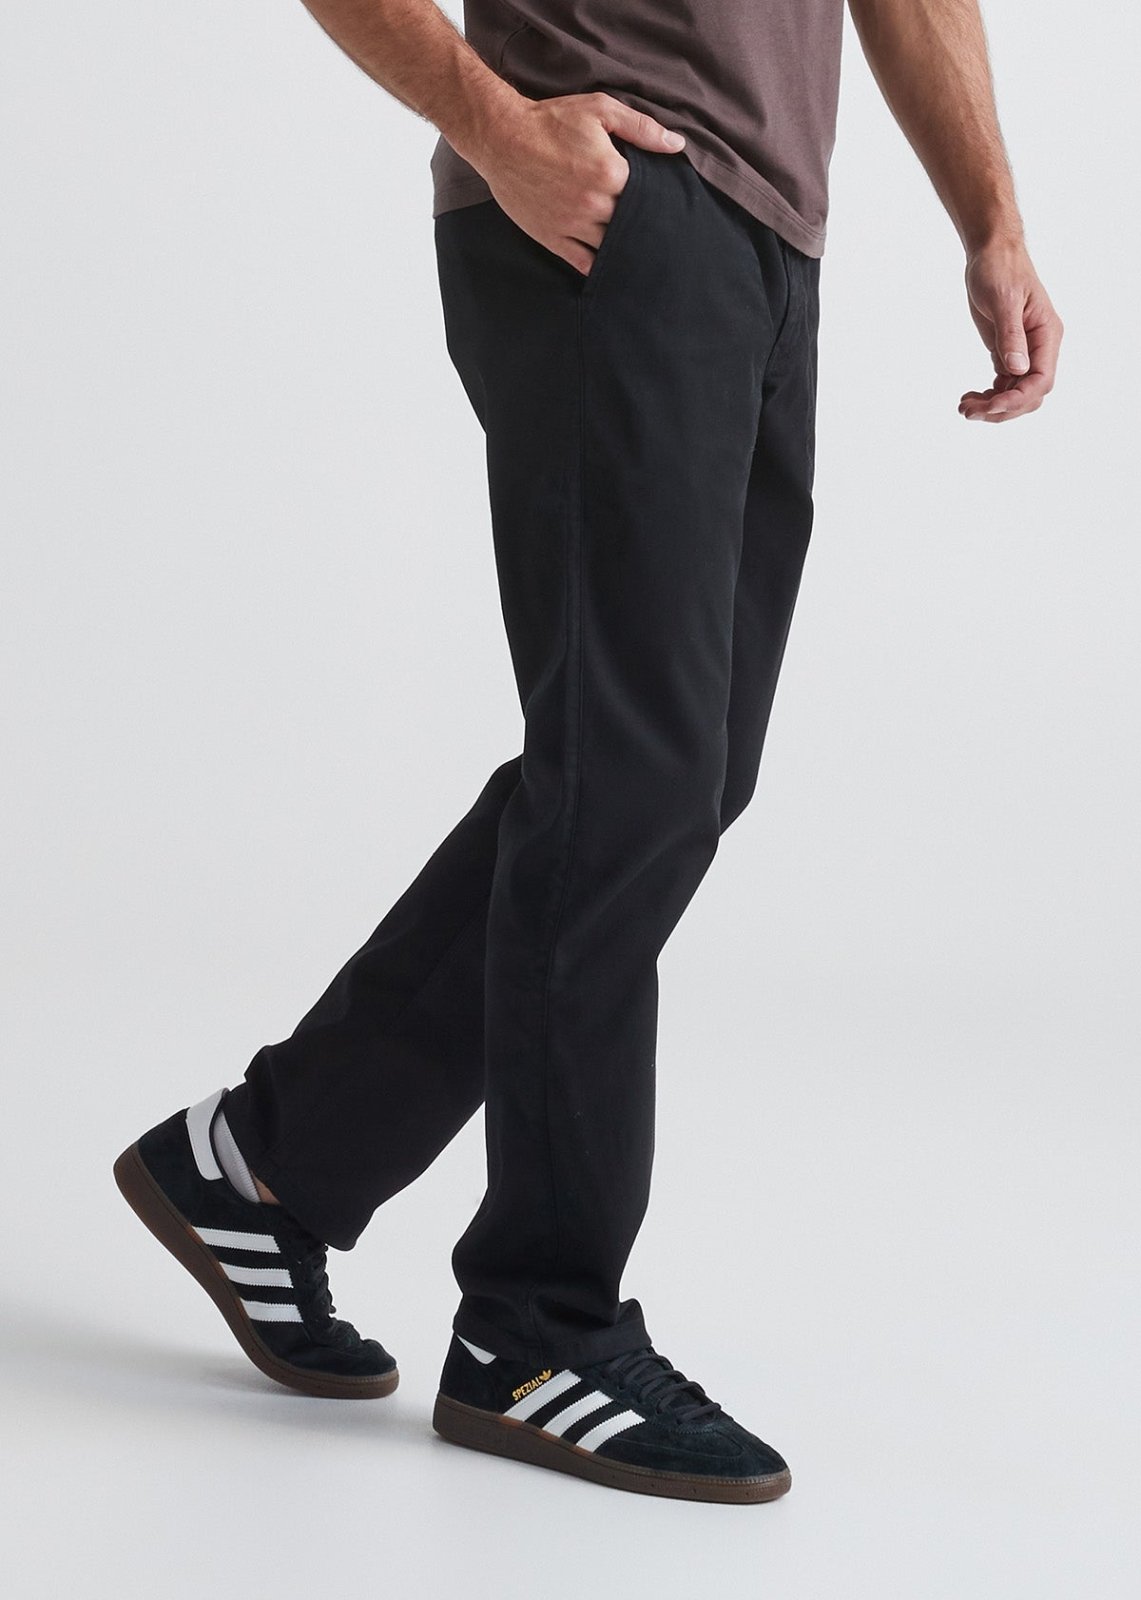 Men's Black Adjustable Athletic Pant Side